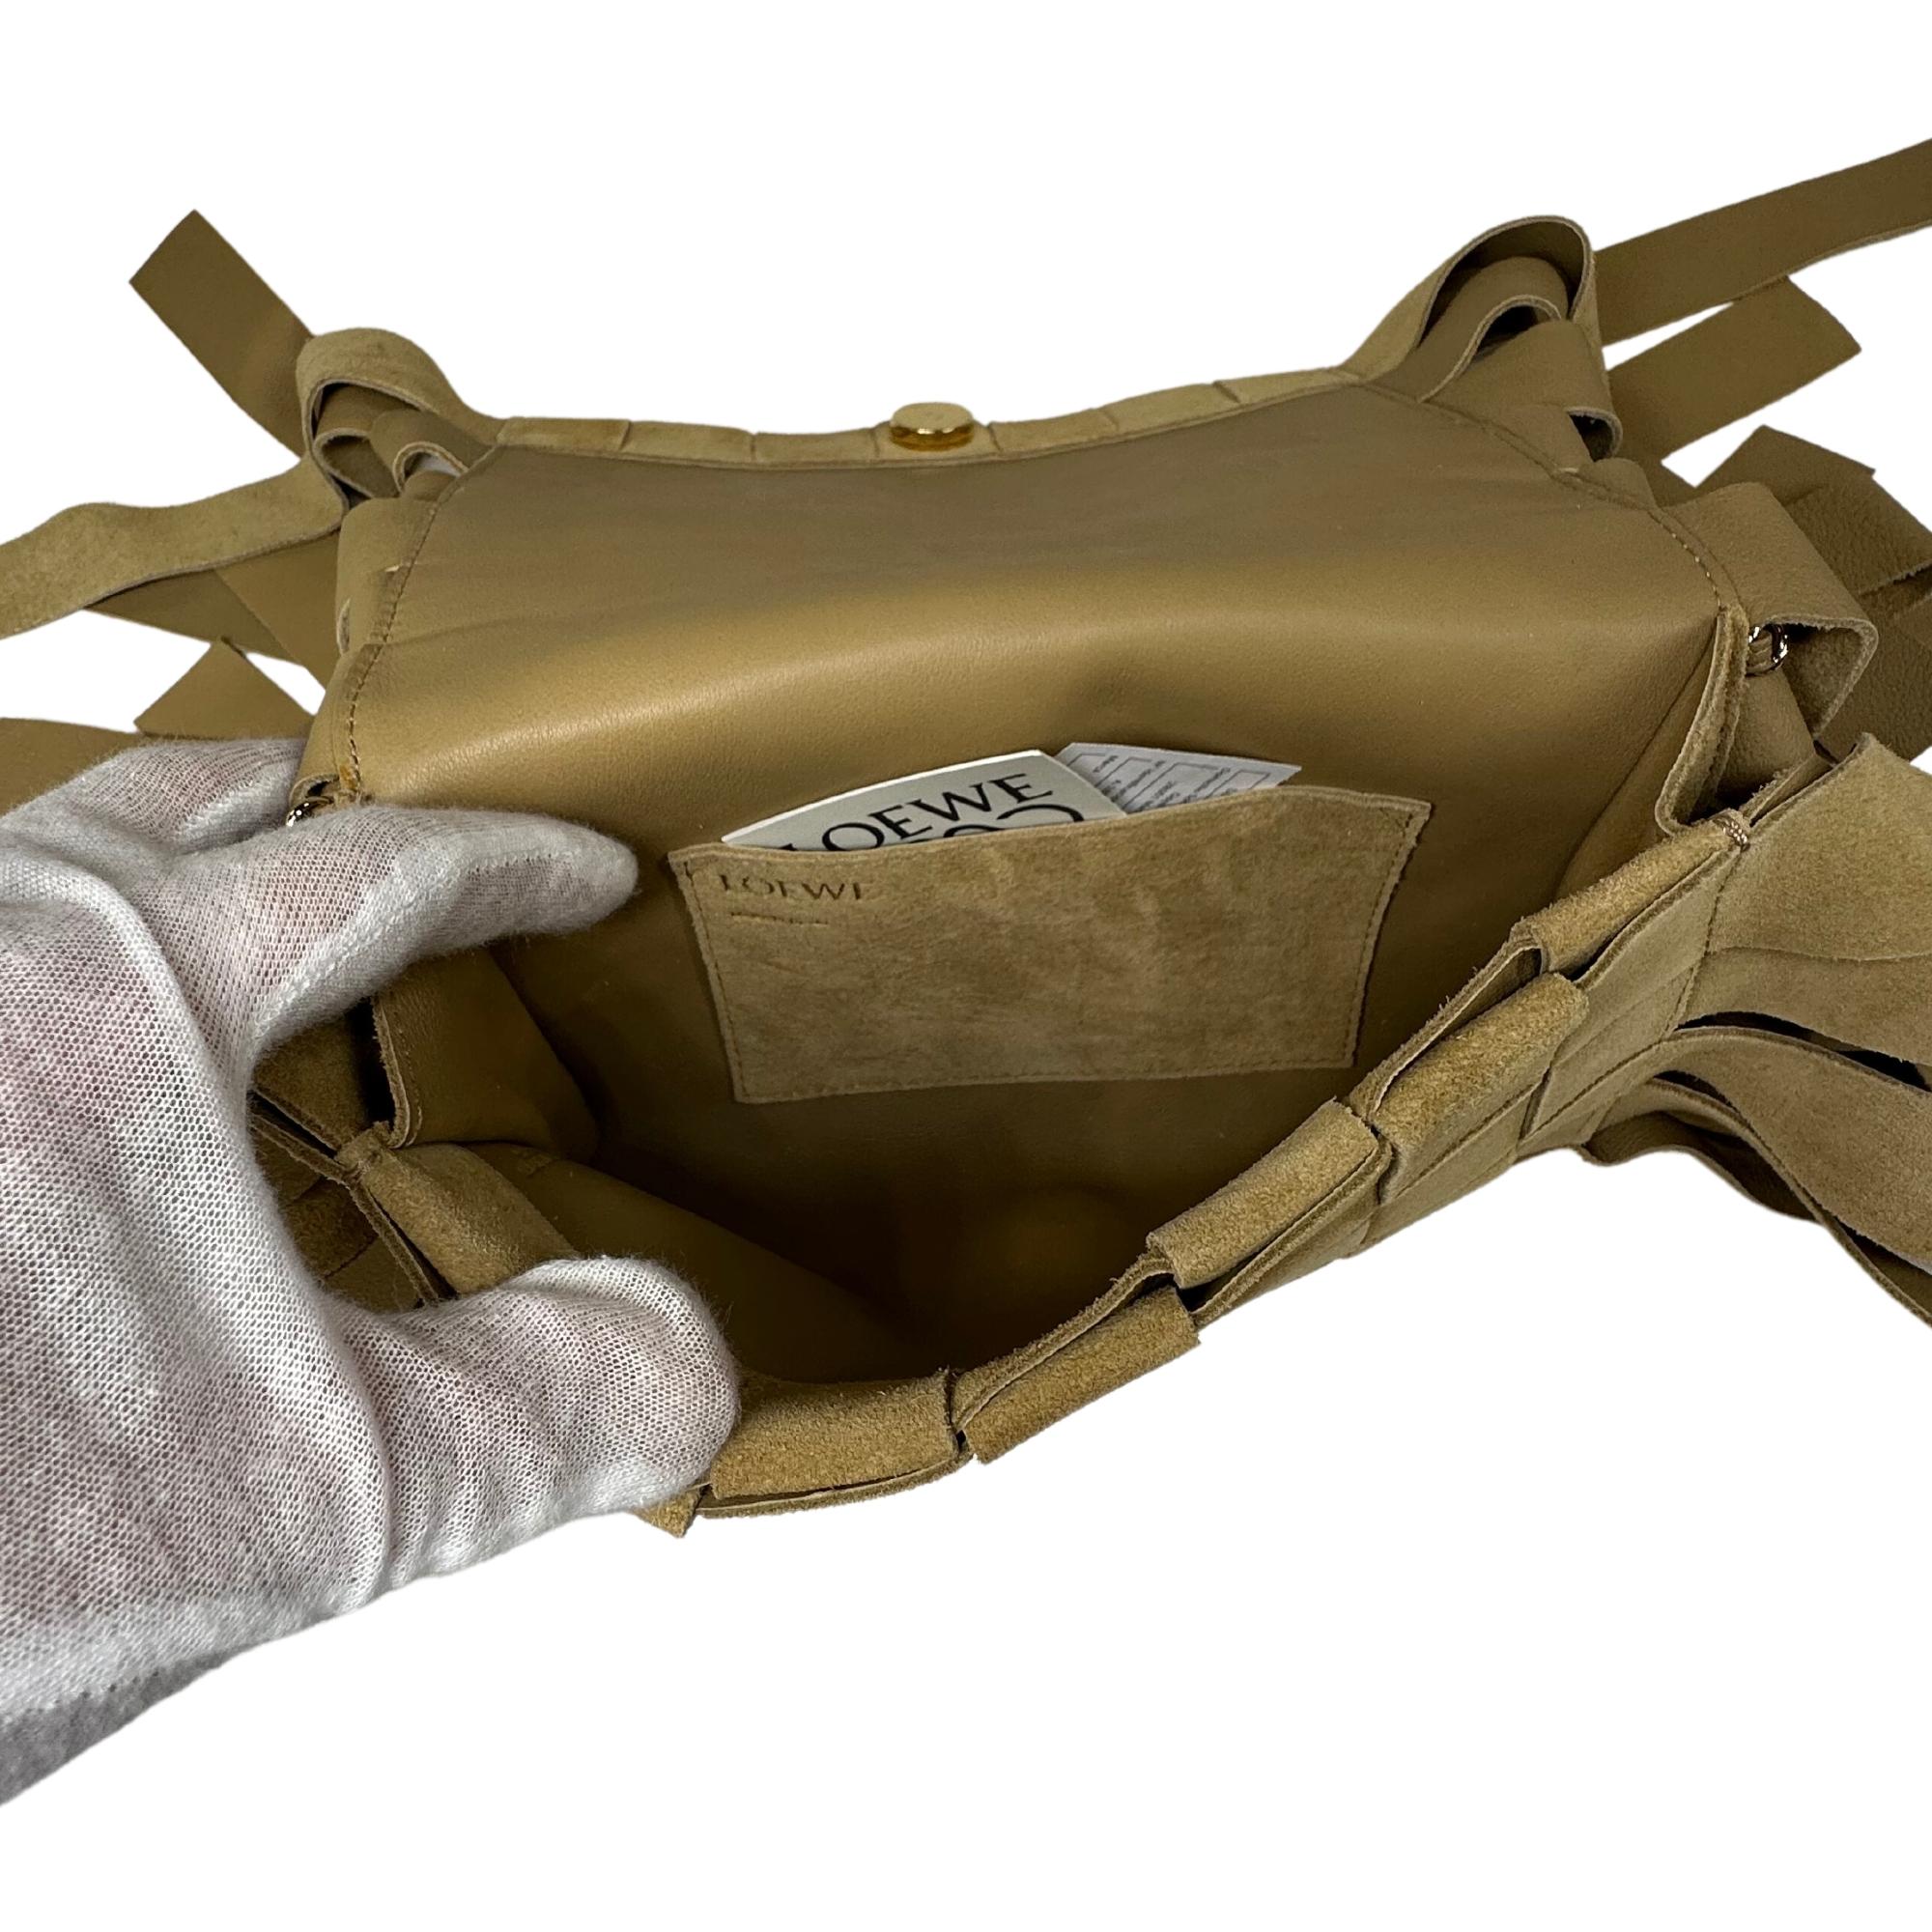 Loewe Crossbody Bag
Neutrals Suede
Gold-Tone Hardware
Single Adjustable Shoulder Strap
Fringe Trim Accent
Leather Lining & Single Interior Pocket
Snap Closure at Front
Includes Dust Bag

Shoulder Strap Drop Max: 21